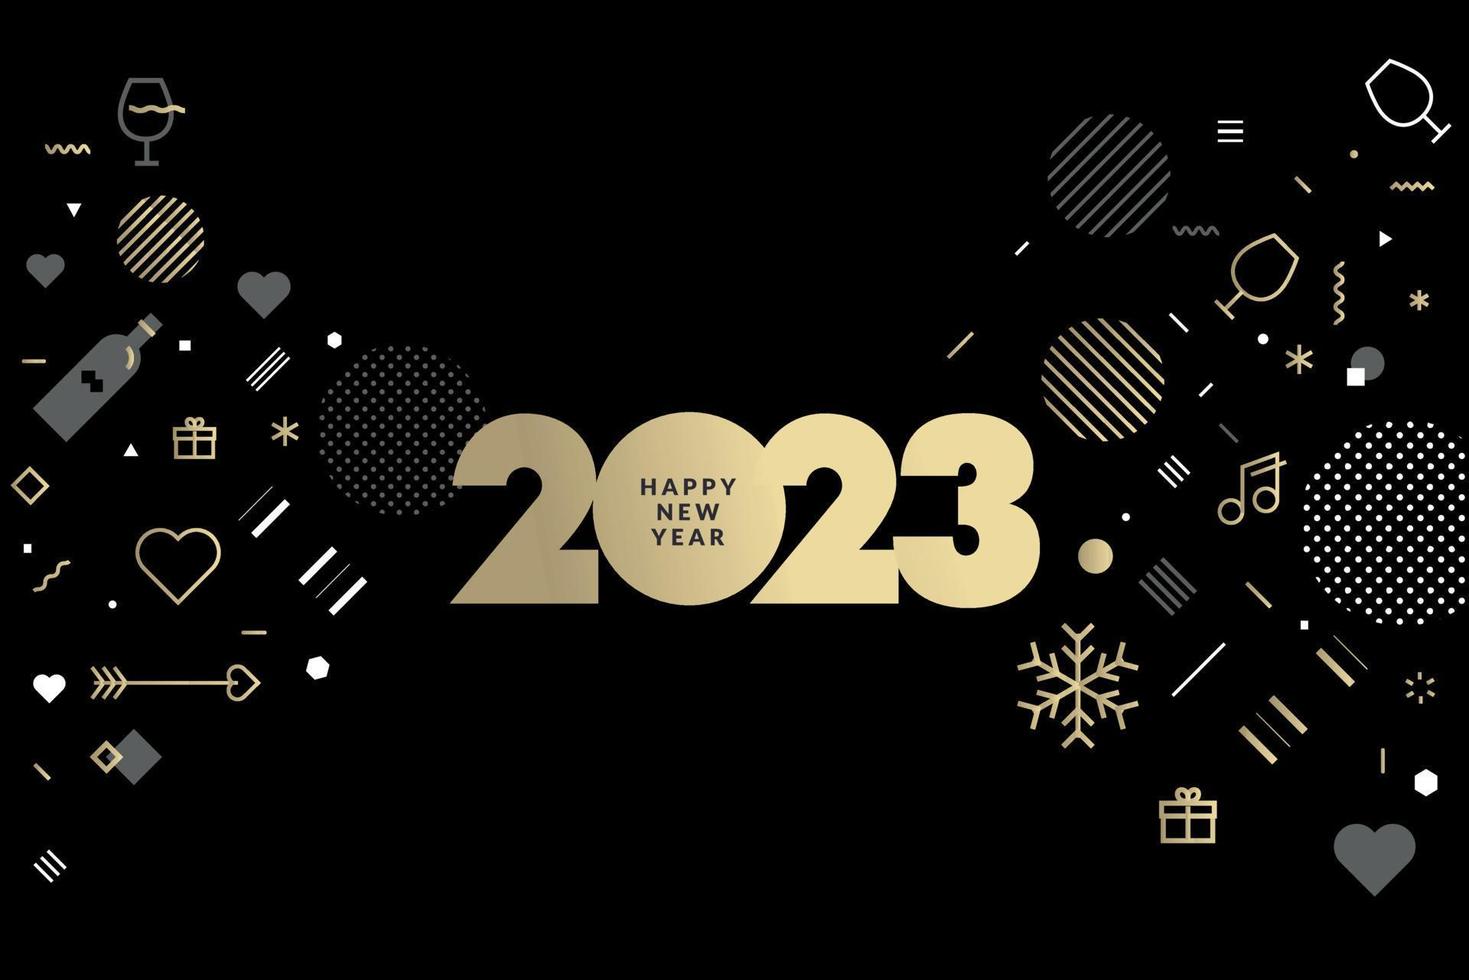 Tarjeta de felicitación de año nuevo 2023. concepto de ilustración vectorial para fondo, tarjeta de felicitación, tarjeta de invitación de fiesta, banner de sitio web, banner de redes sociales, material de marketing. vector